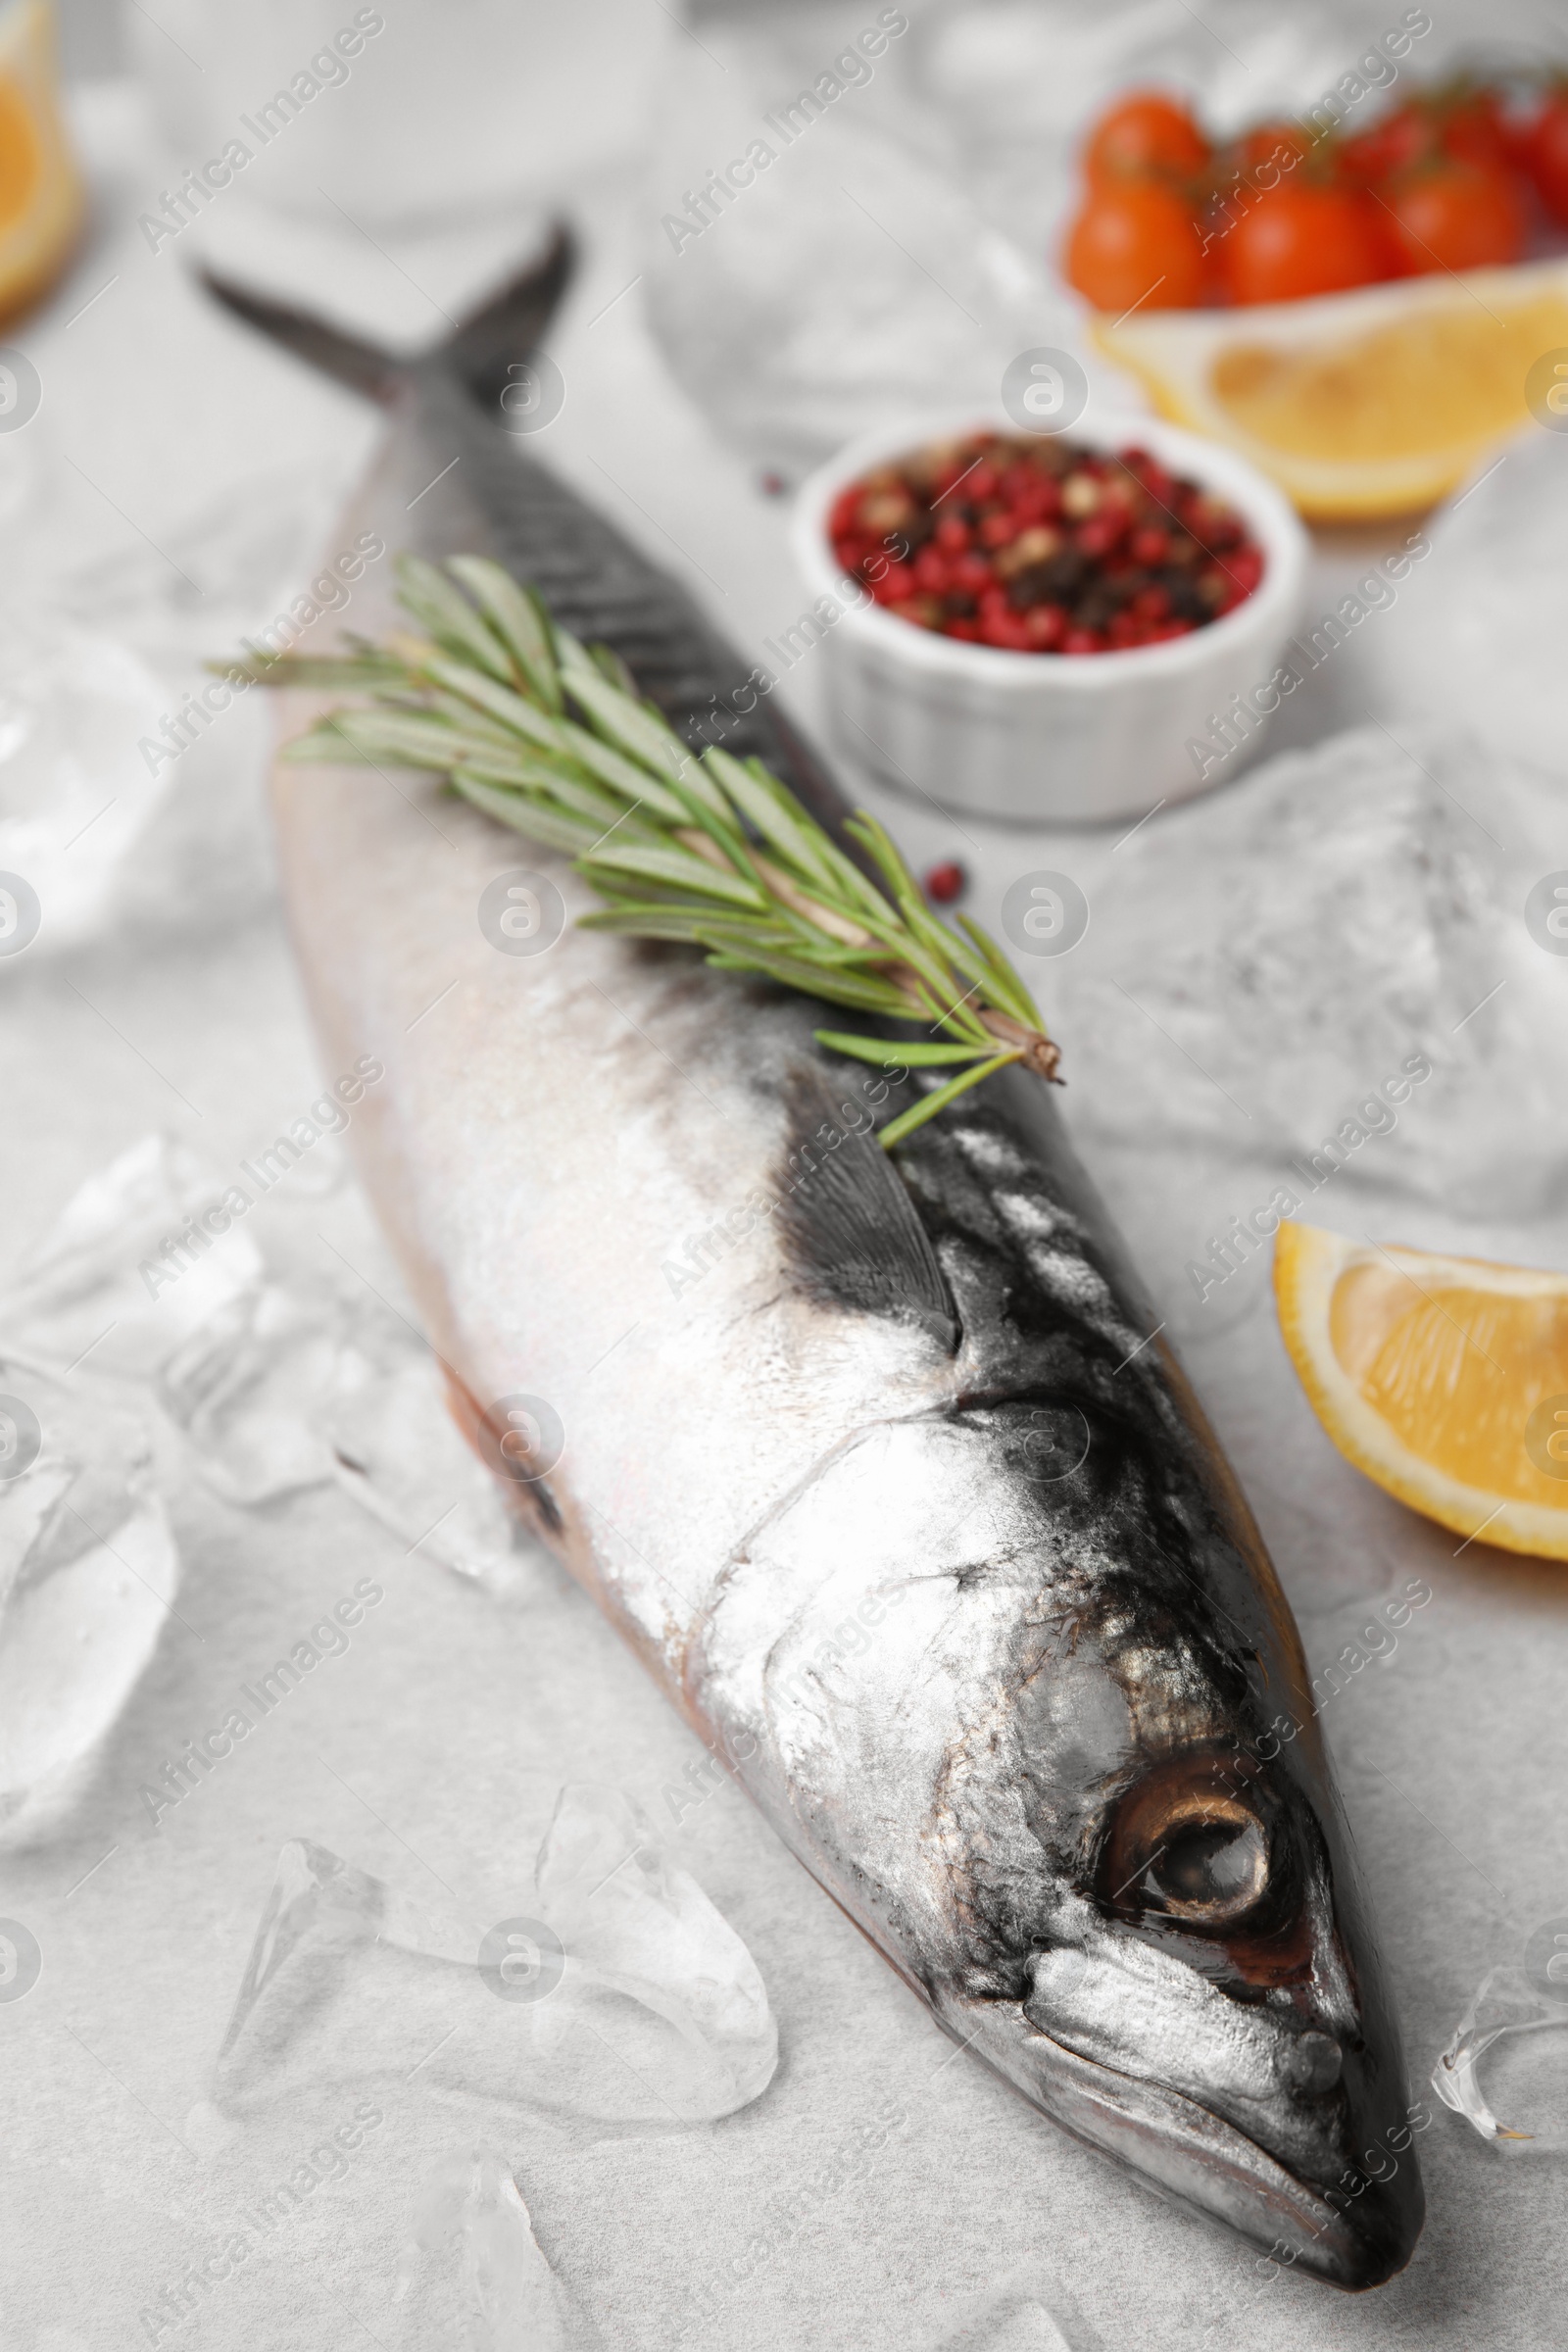 Photo of Raw mackerel, rosemary and ice on light gray table